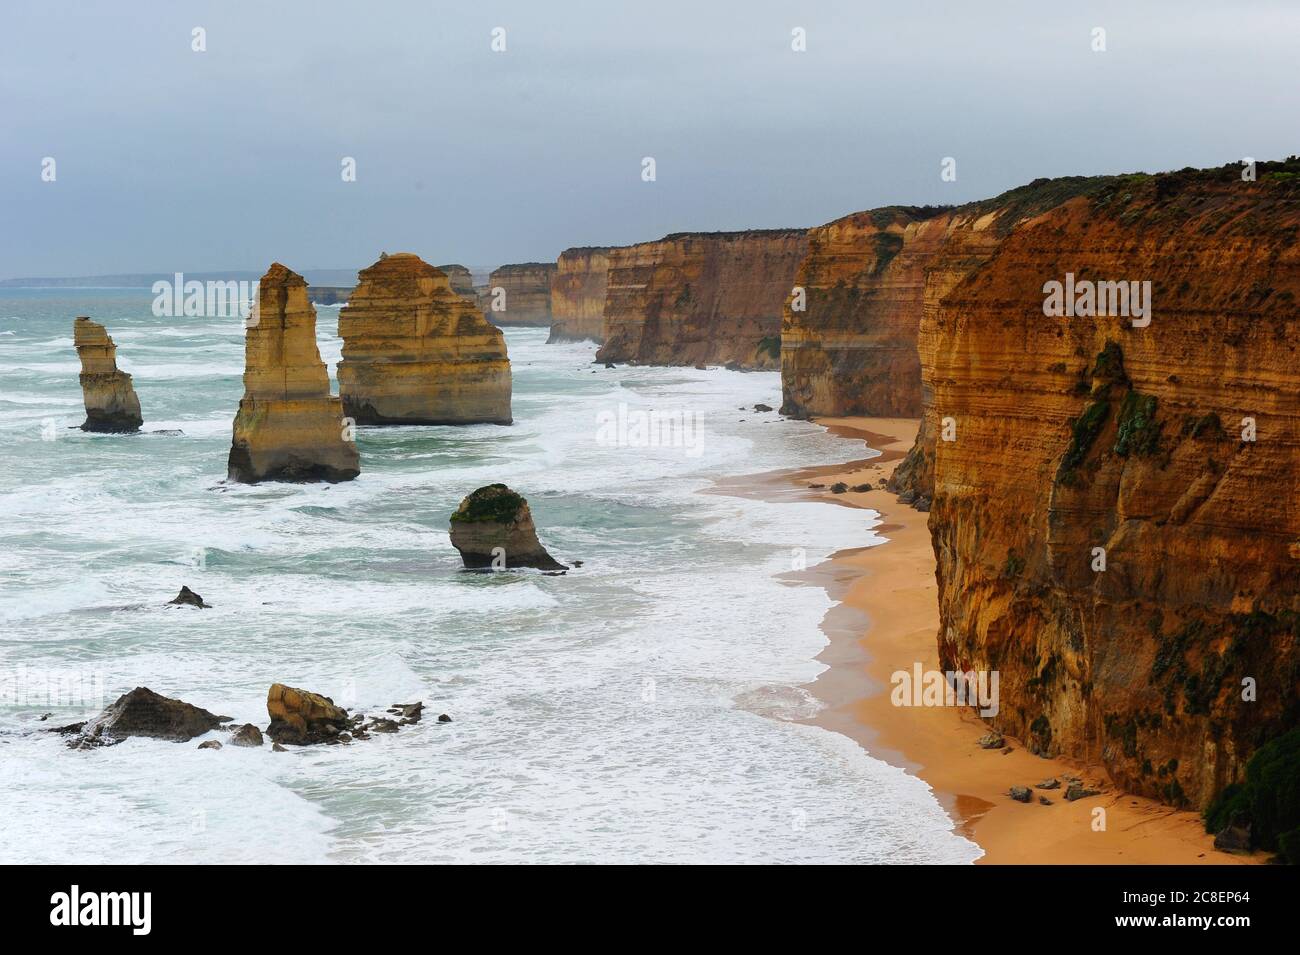 Die malerische Felsformation Twelve Apostles entlang der steilen Klippenküste der Great Ocean Road in Victoria, Australien, mit bewölktem Himmel und wildem Meer. Stockfoto